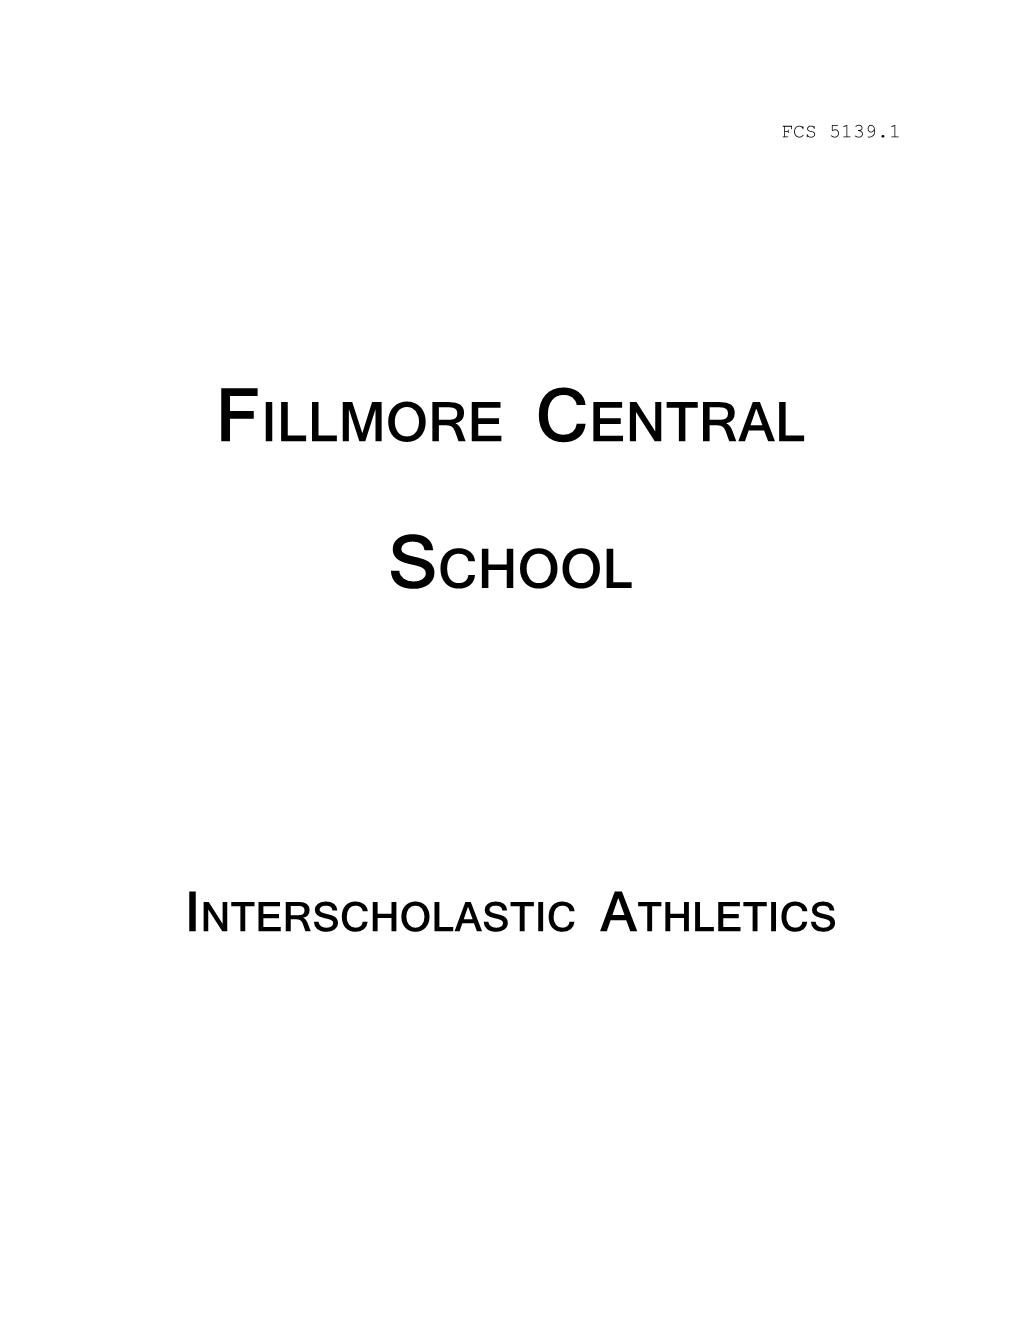 Fillmore Central School